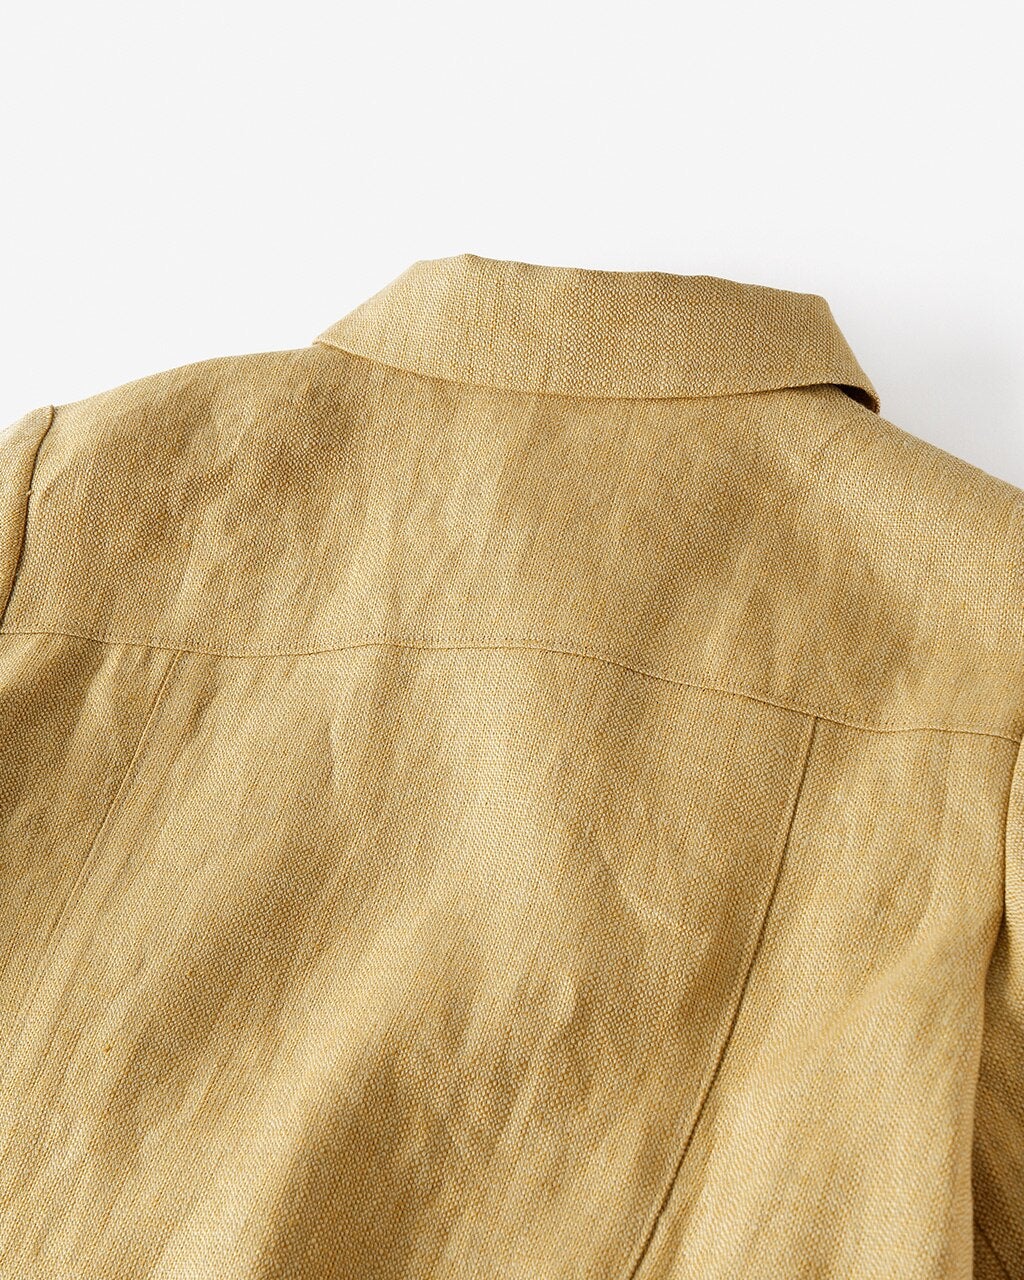 極リネン・五分袖ジャケット/40代50代からのレディース・メンズ